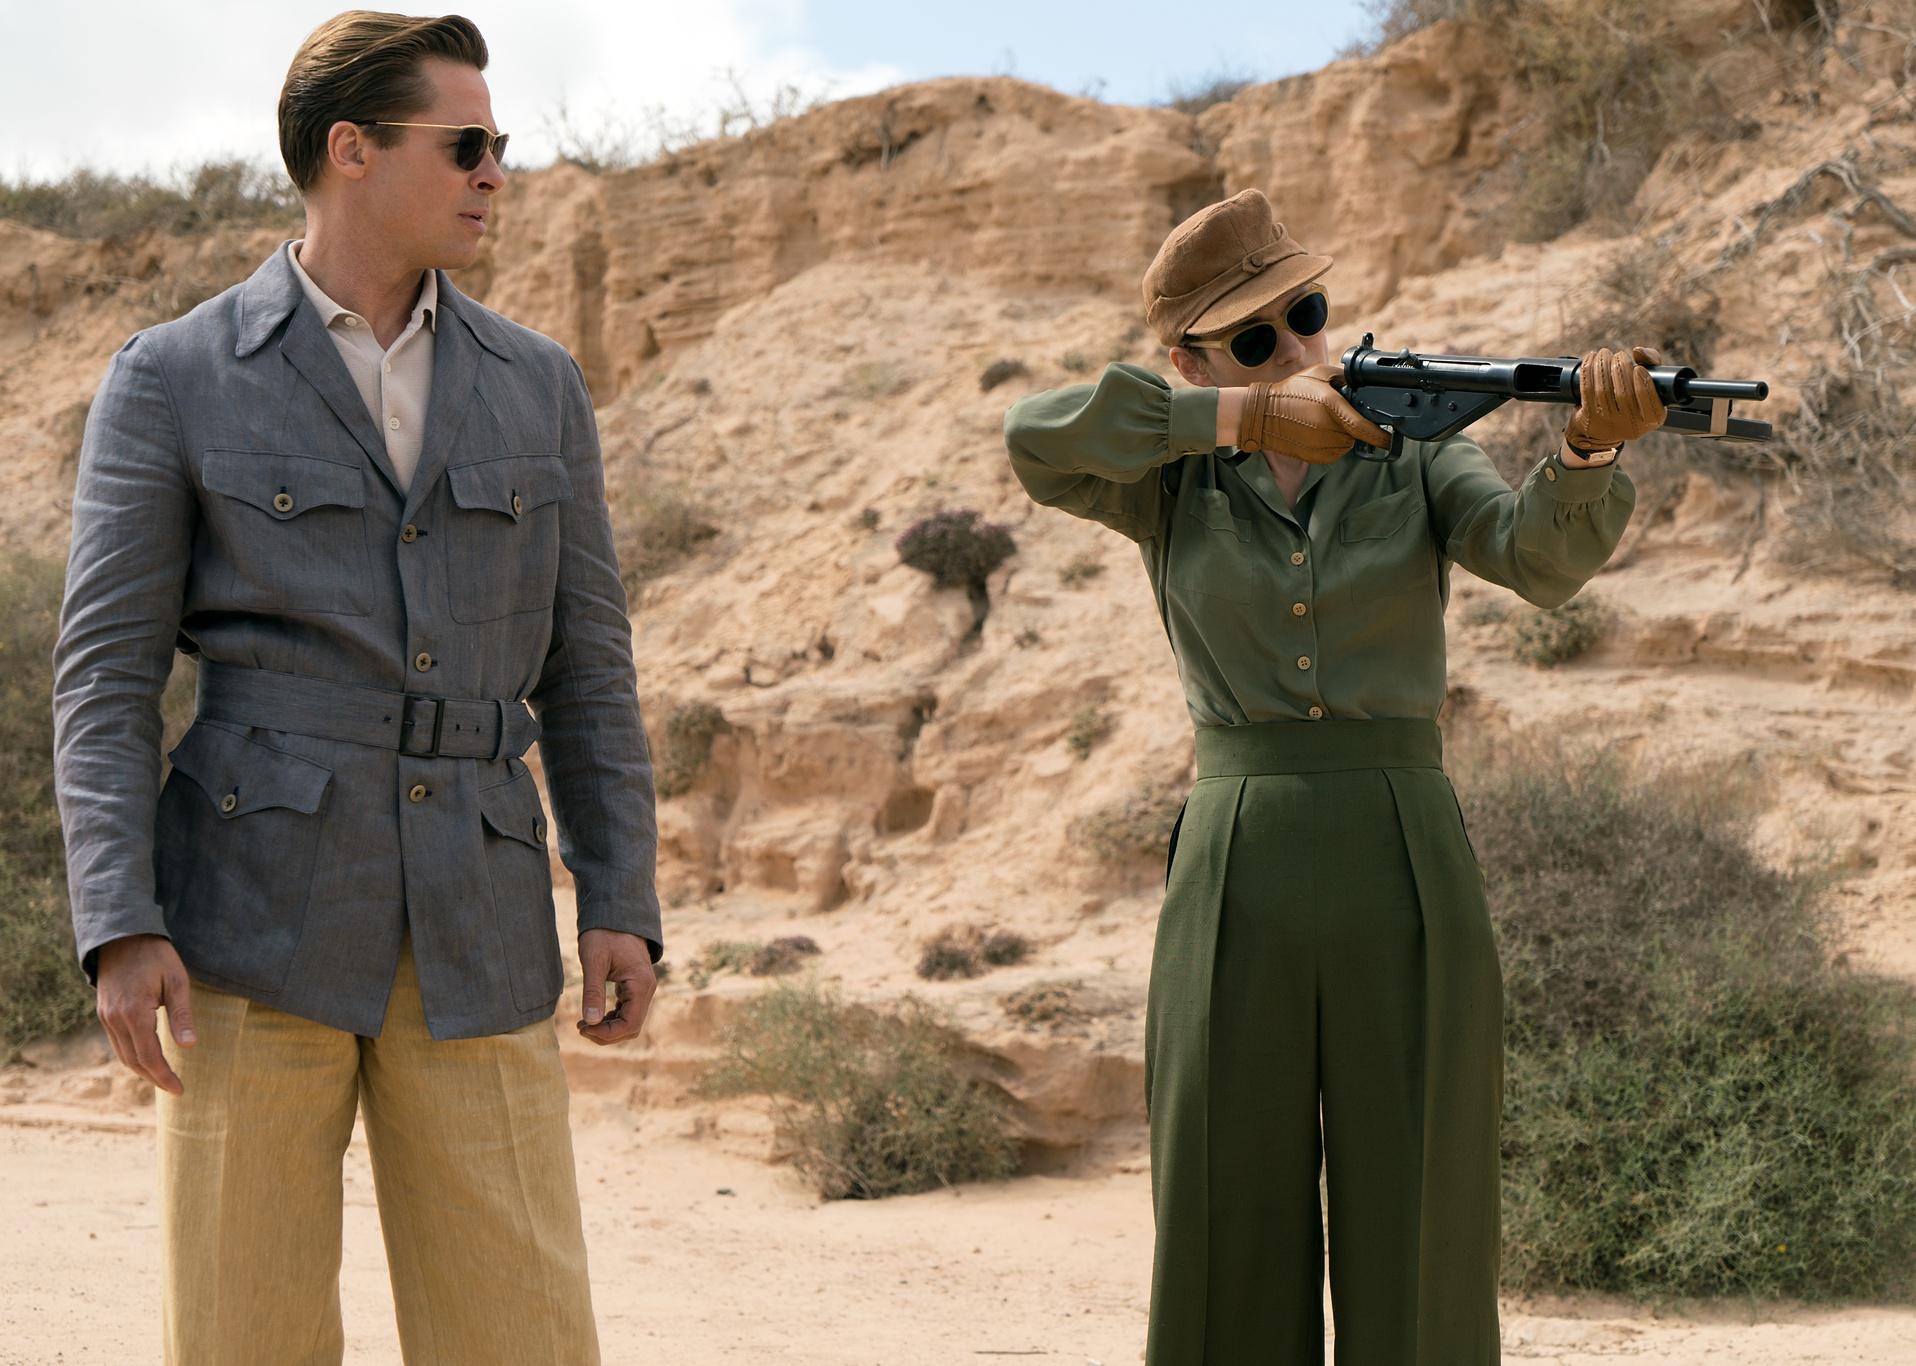 Brad Pitt watches Marion Cotillard shooting a long gun.